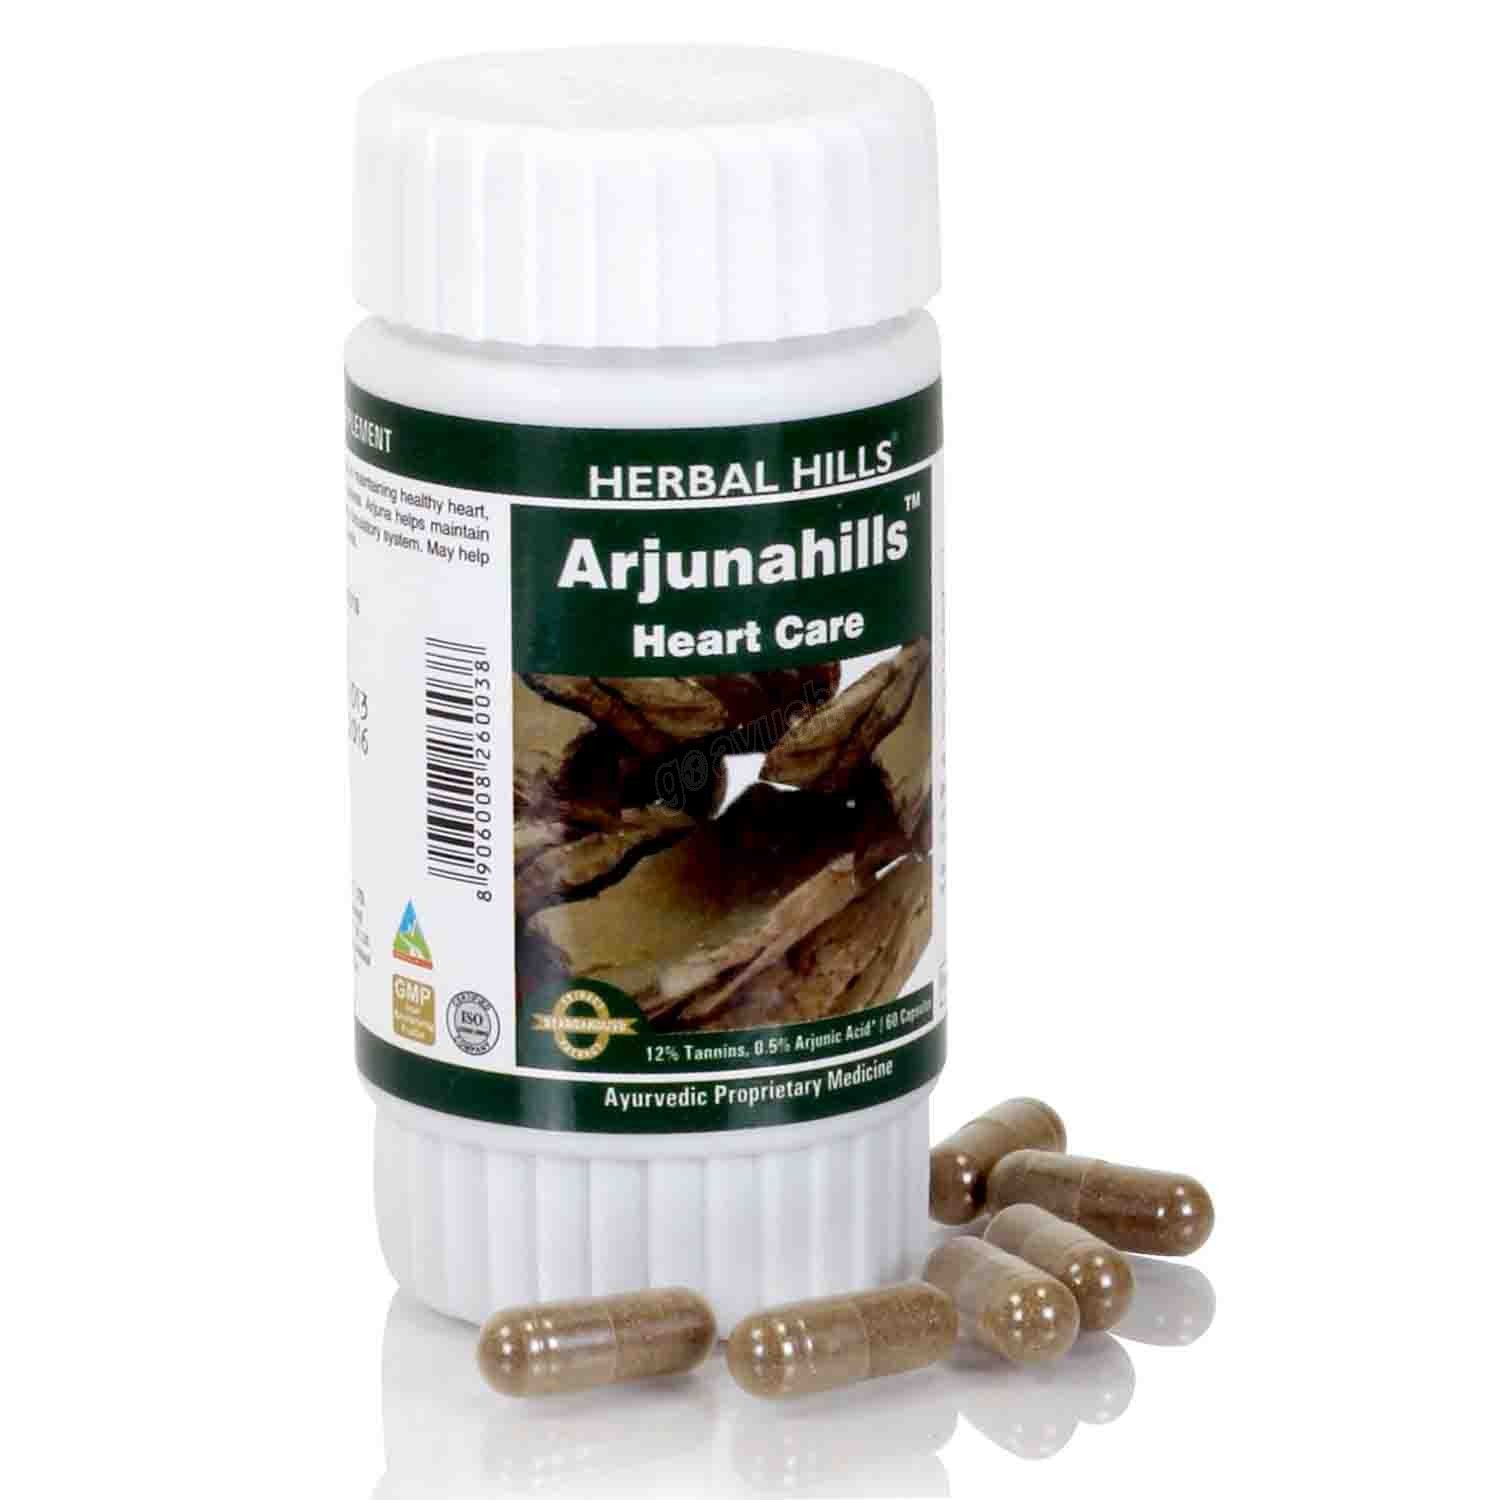 Buy Herbal Hills Arjunahills Capsule at Best Price Online